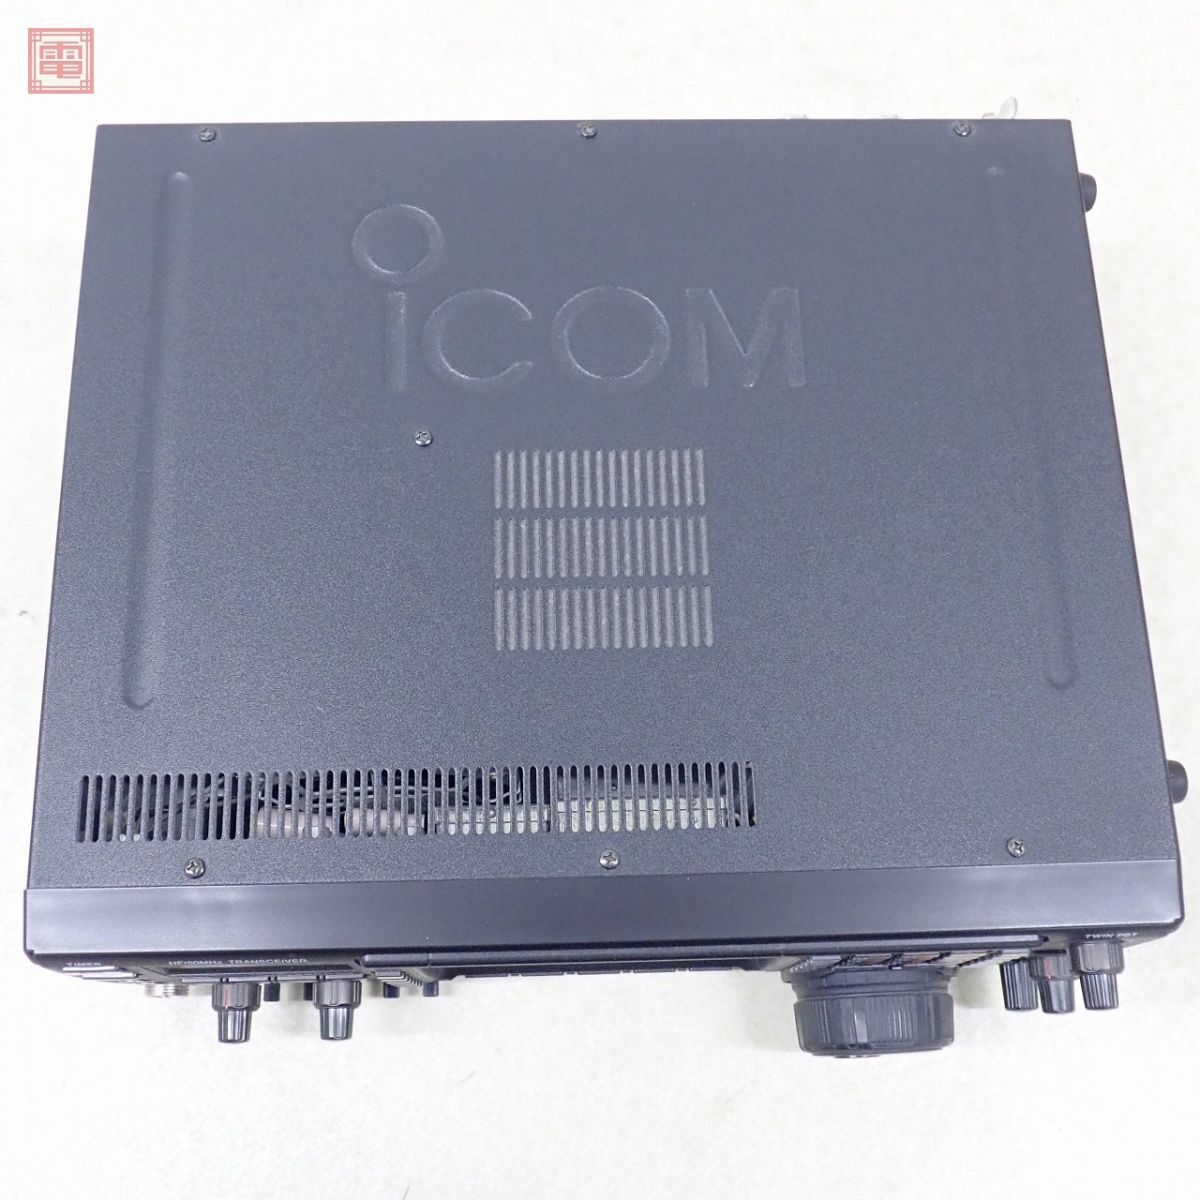  Icom IC-756PROII HF obi /50MHz 100W руководство пользователя * оригинальная коробка есть IC-756PRO2 ICOM[40